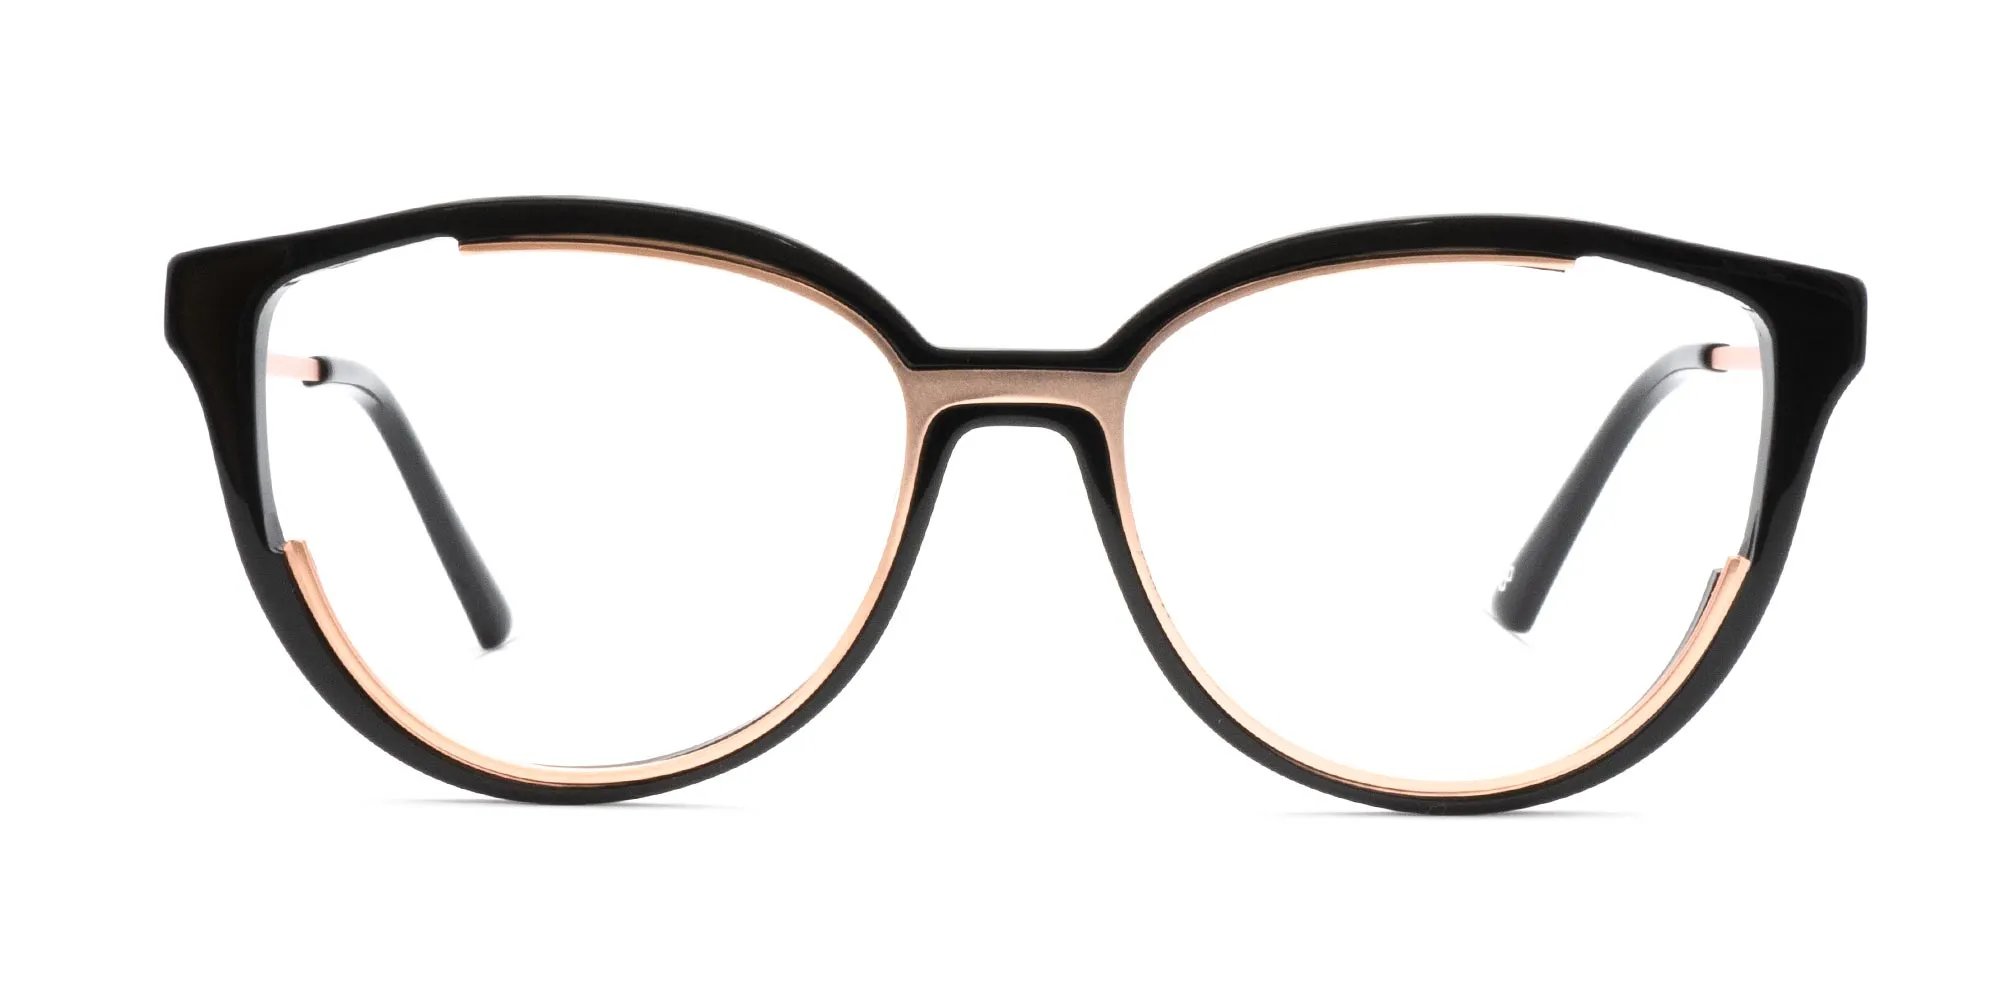 Designer Glasses Frames For Women-2